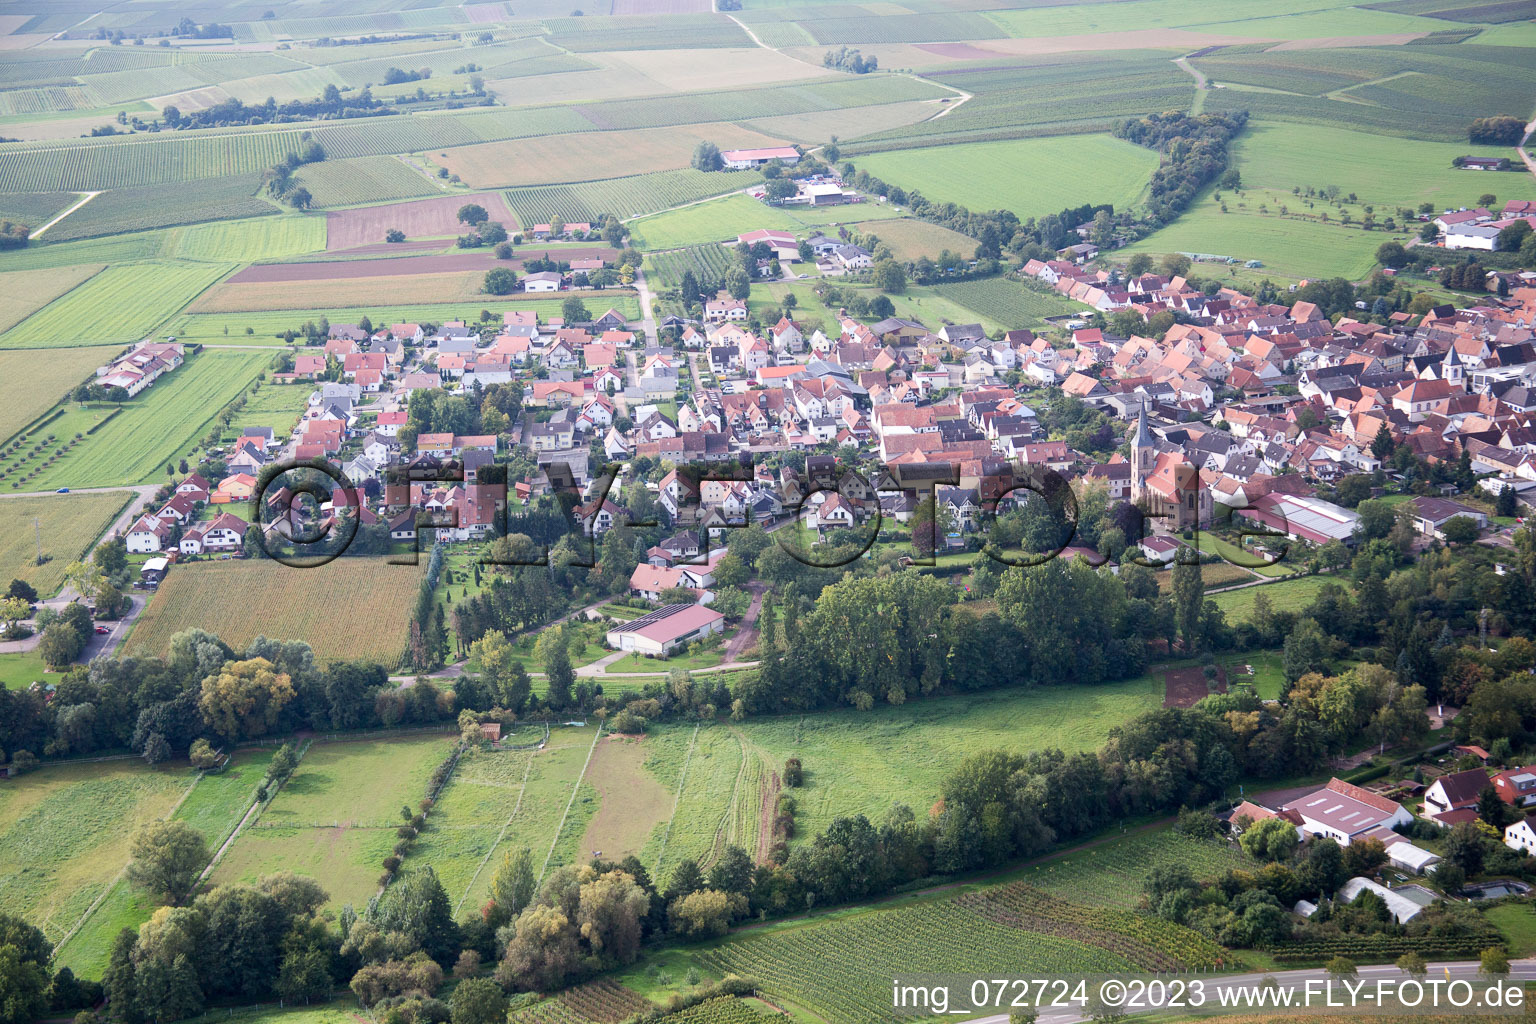 District Billigheim in Billigheim-Ingenheim in the state Rhineland-Palatinate, Germany